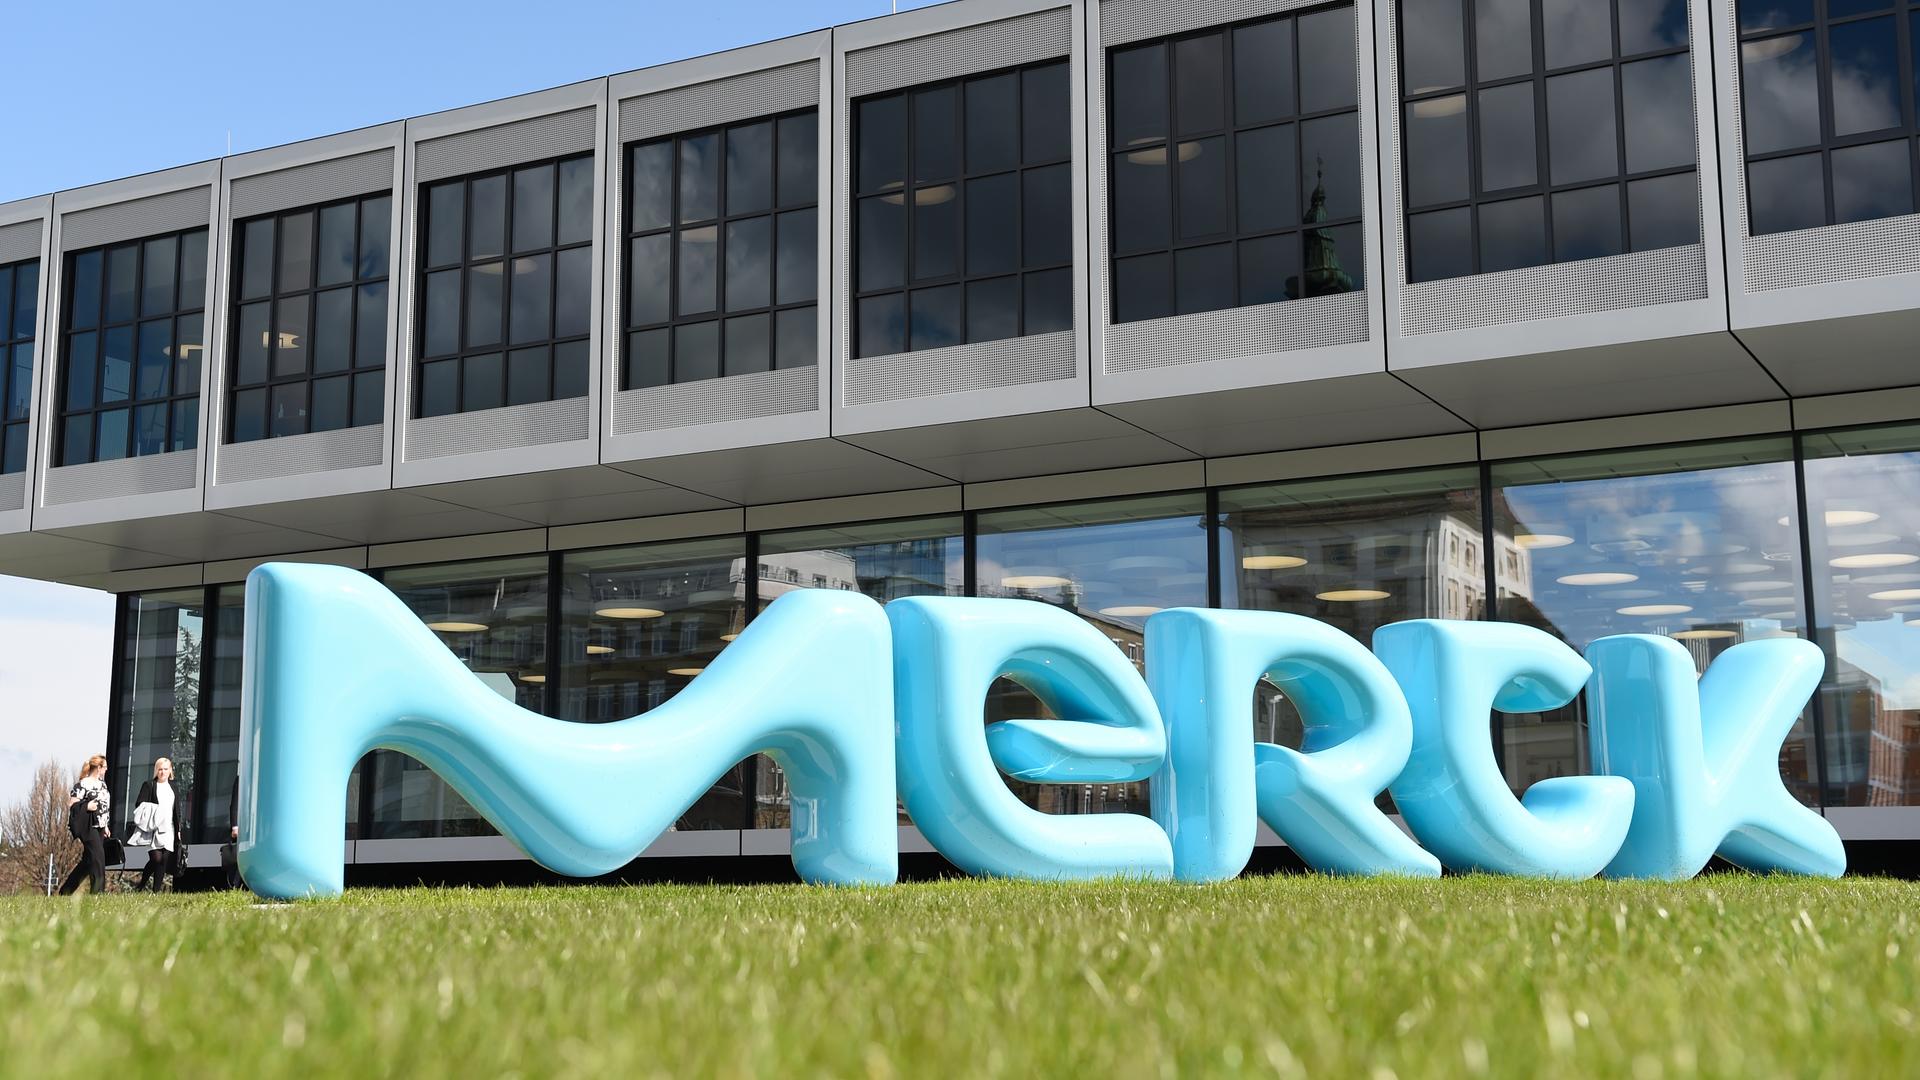 L’azienda farmaceutica Merck taglia 200 posti di lavoro a Darmstadt – altri 550 posti di lavoro sono minacciati |  www.hessenschau.de